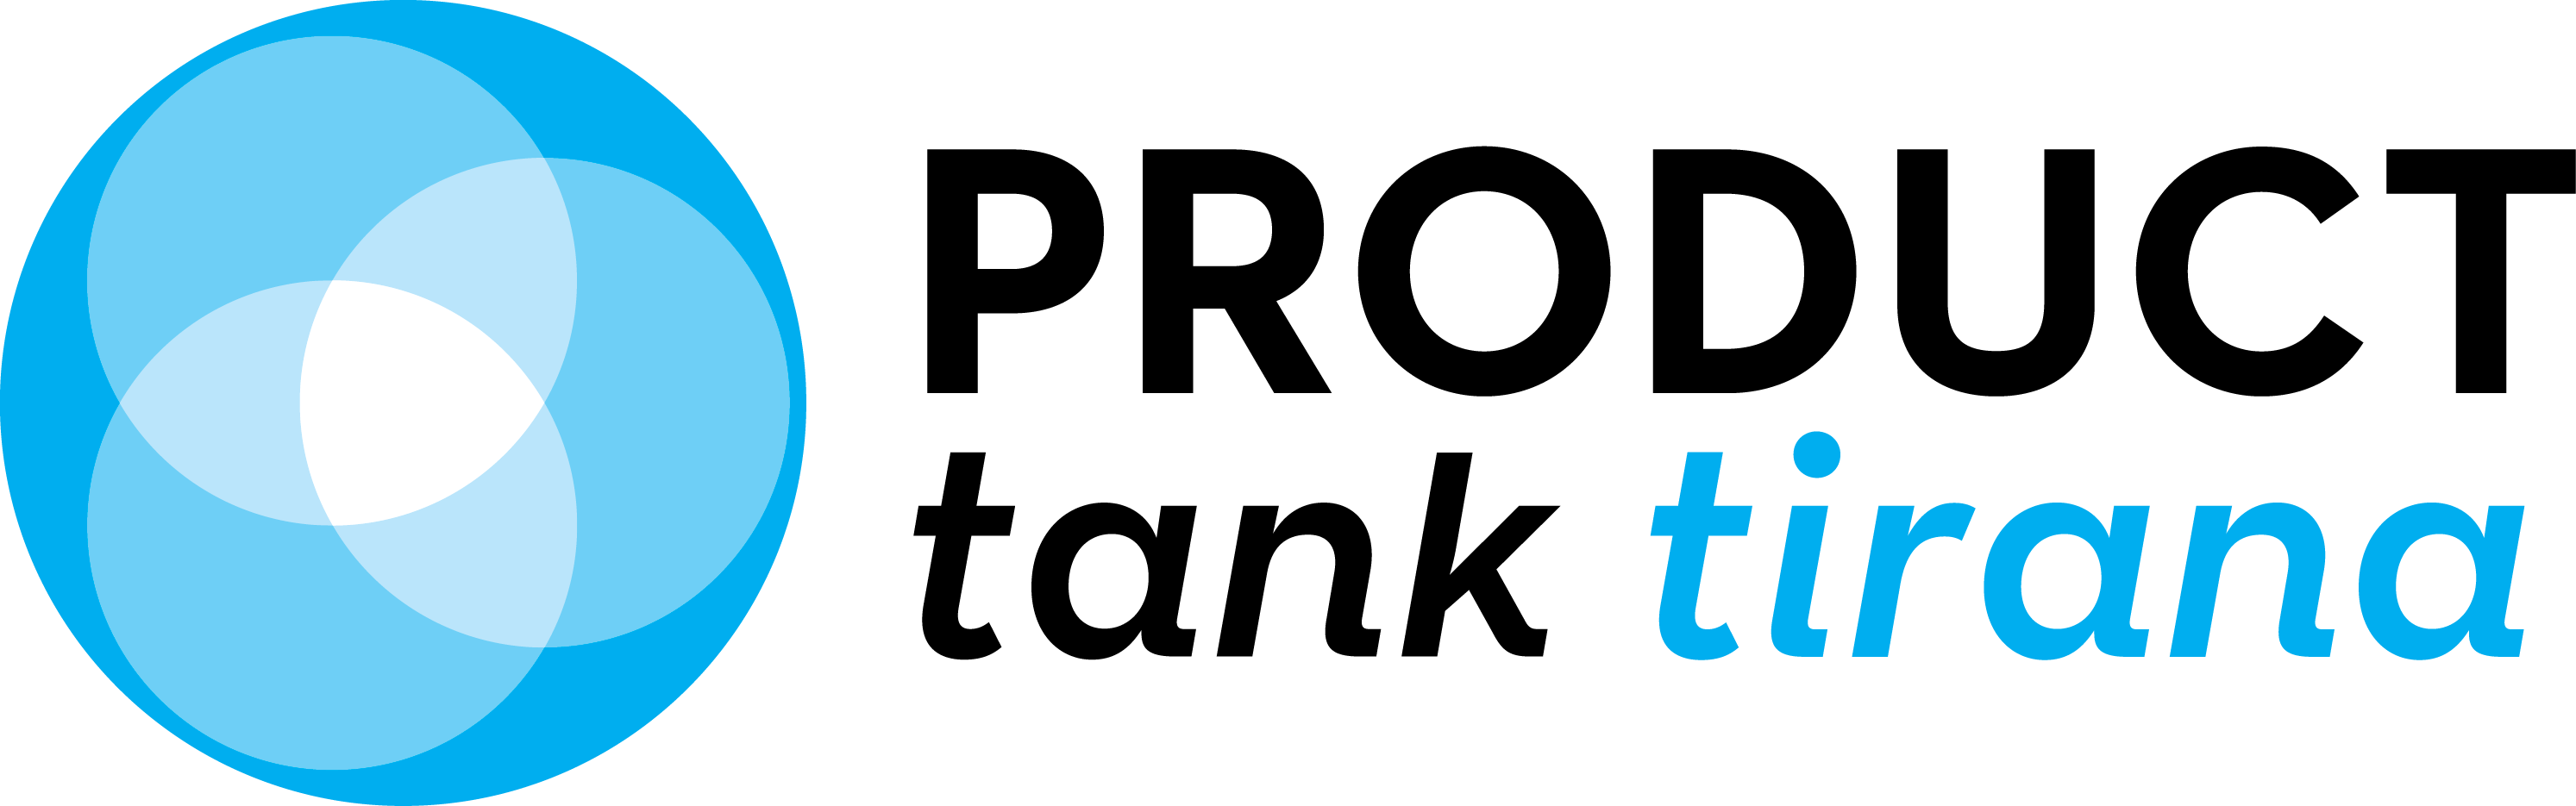 ProductTank_logo_tirana